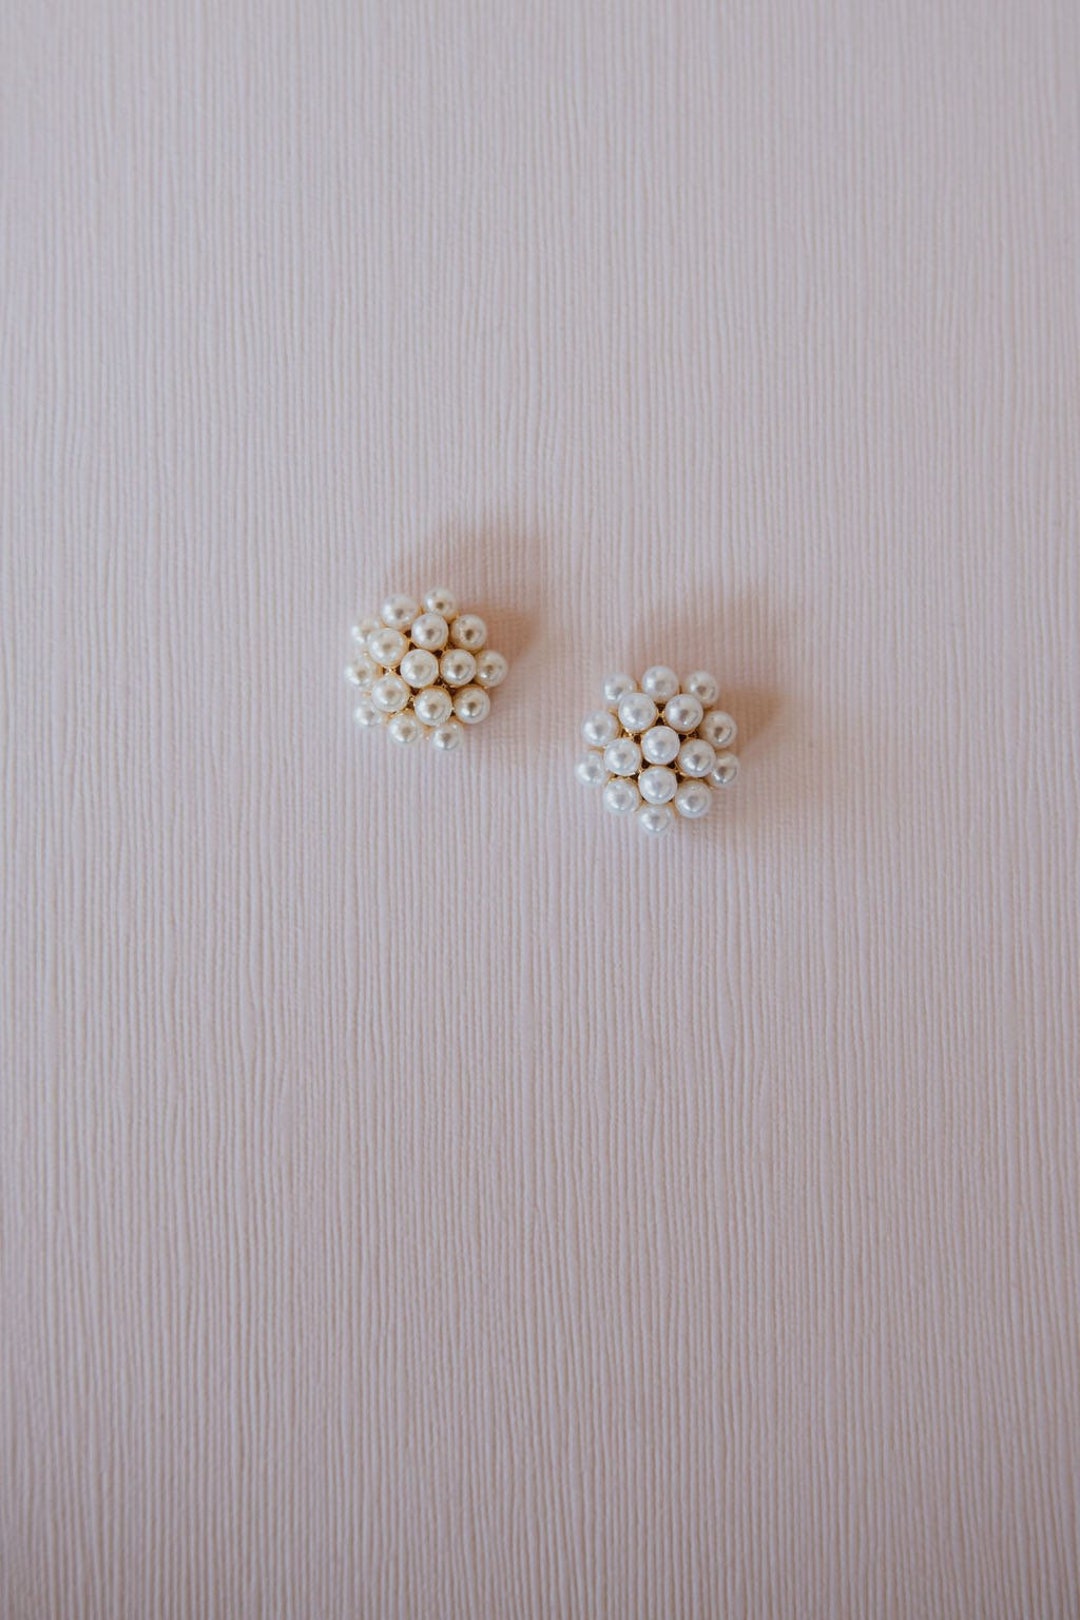 Pearl Bridal Stud Earrings Pearl and Gold Cluster Pave Wedding Earrings Pearl Bridesmaid Earrings Vintage Boho Bride Gift Phaedra Earrings